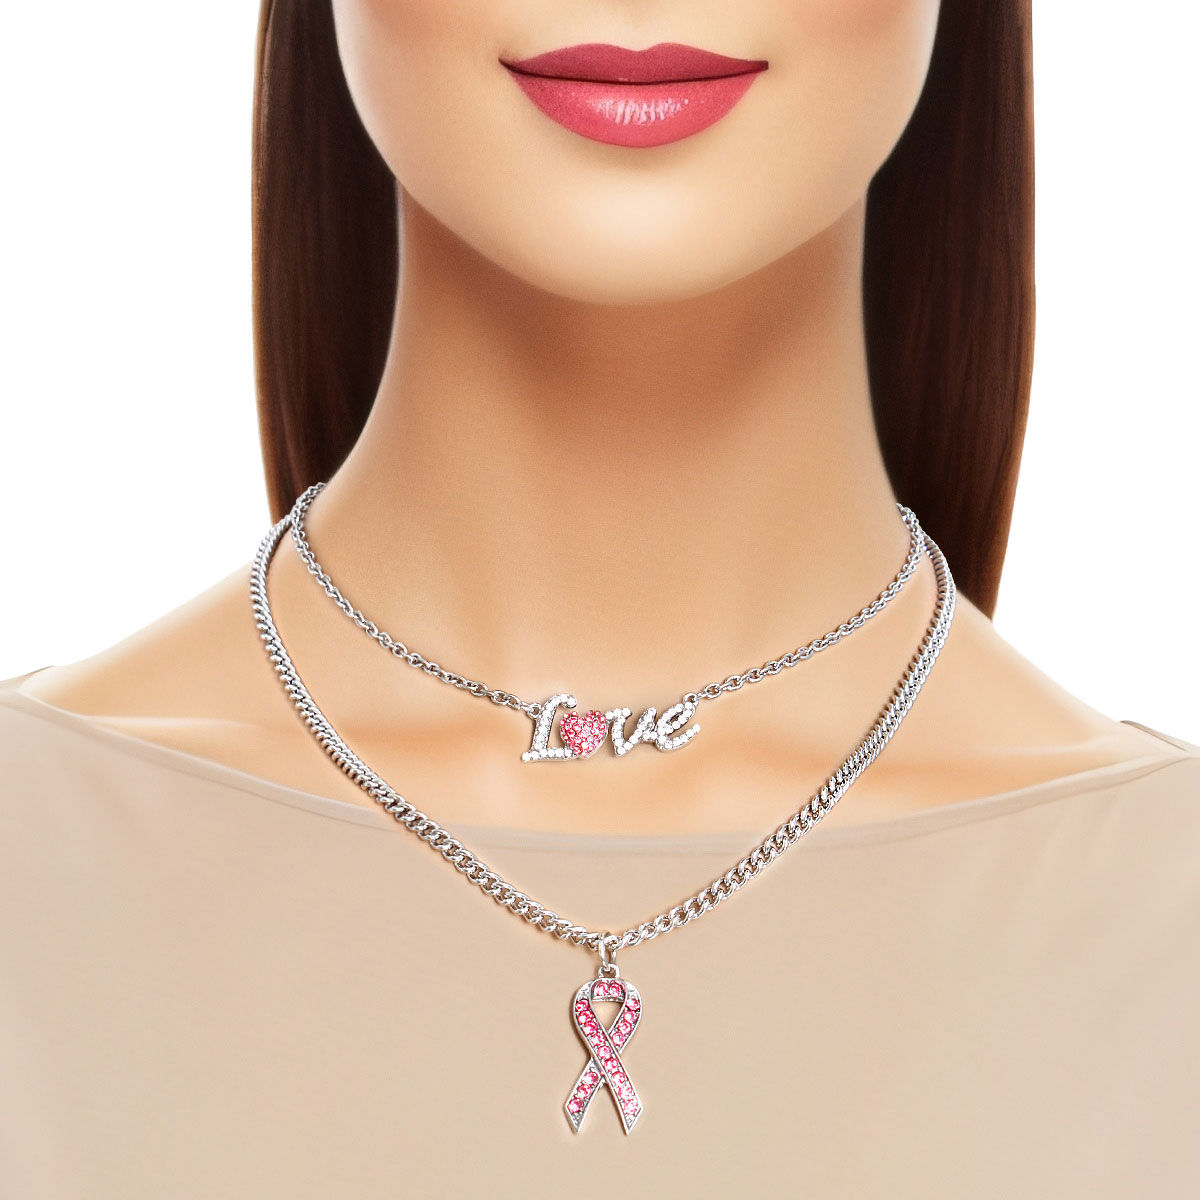 Breast Cancer Survivor Silver Necklace Awareness Pink Ribbon Charm Gift for  Her Cancer Warrior Survivor Gift Cancer Fighter - Etsy